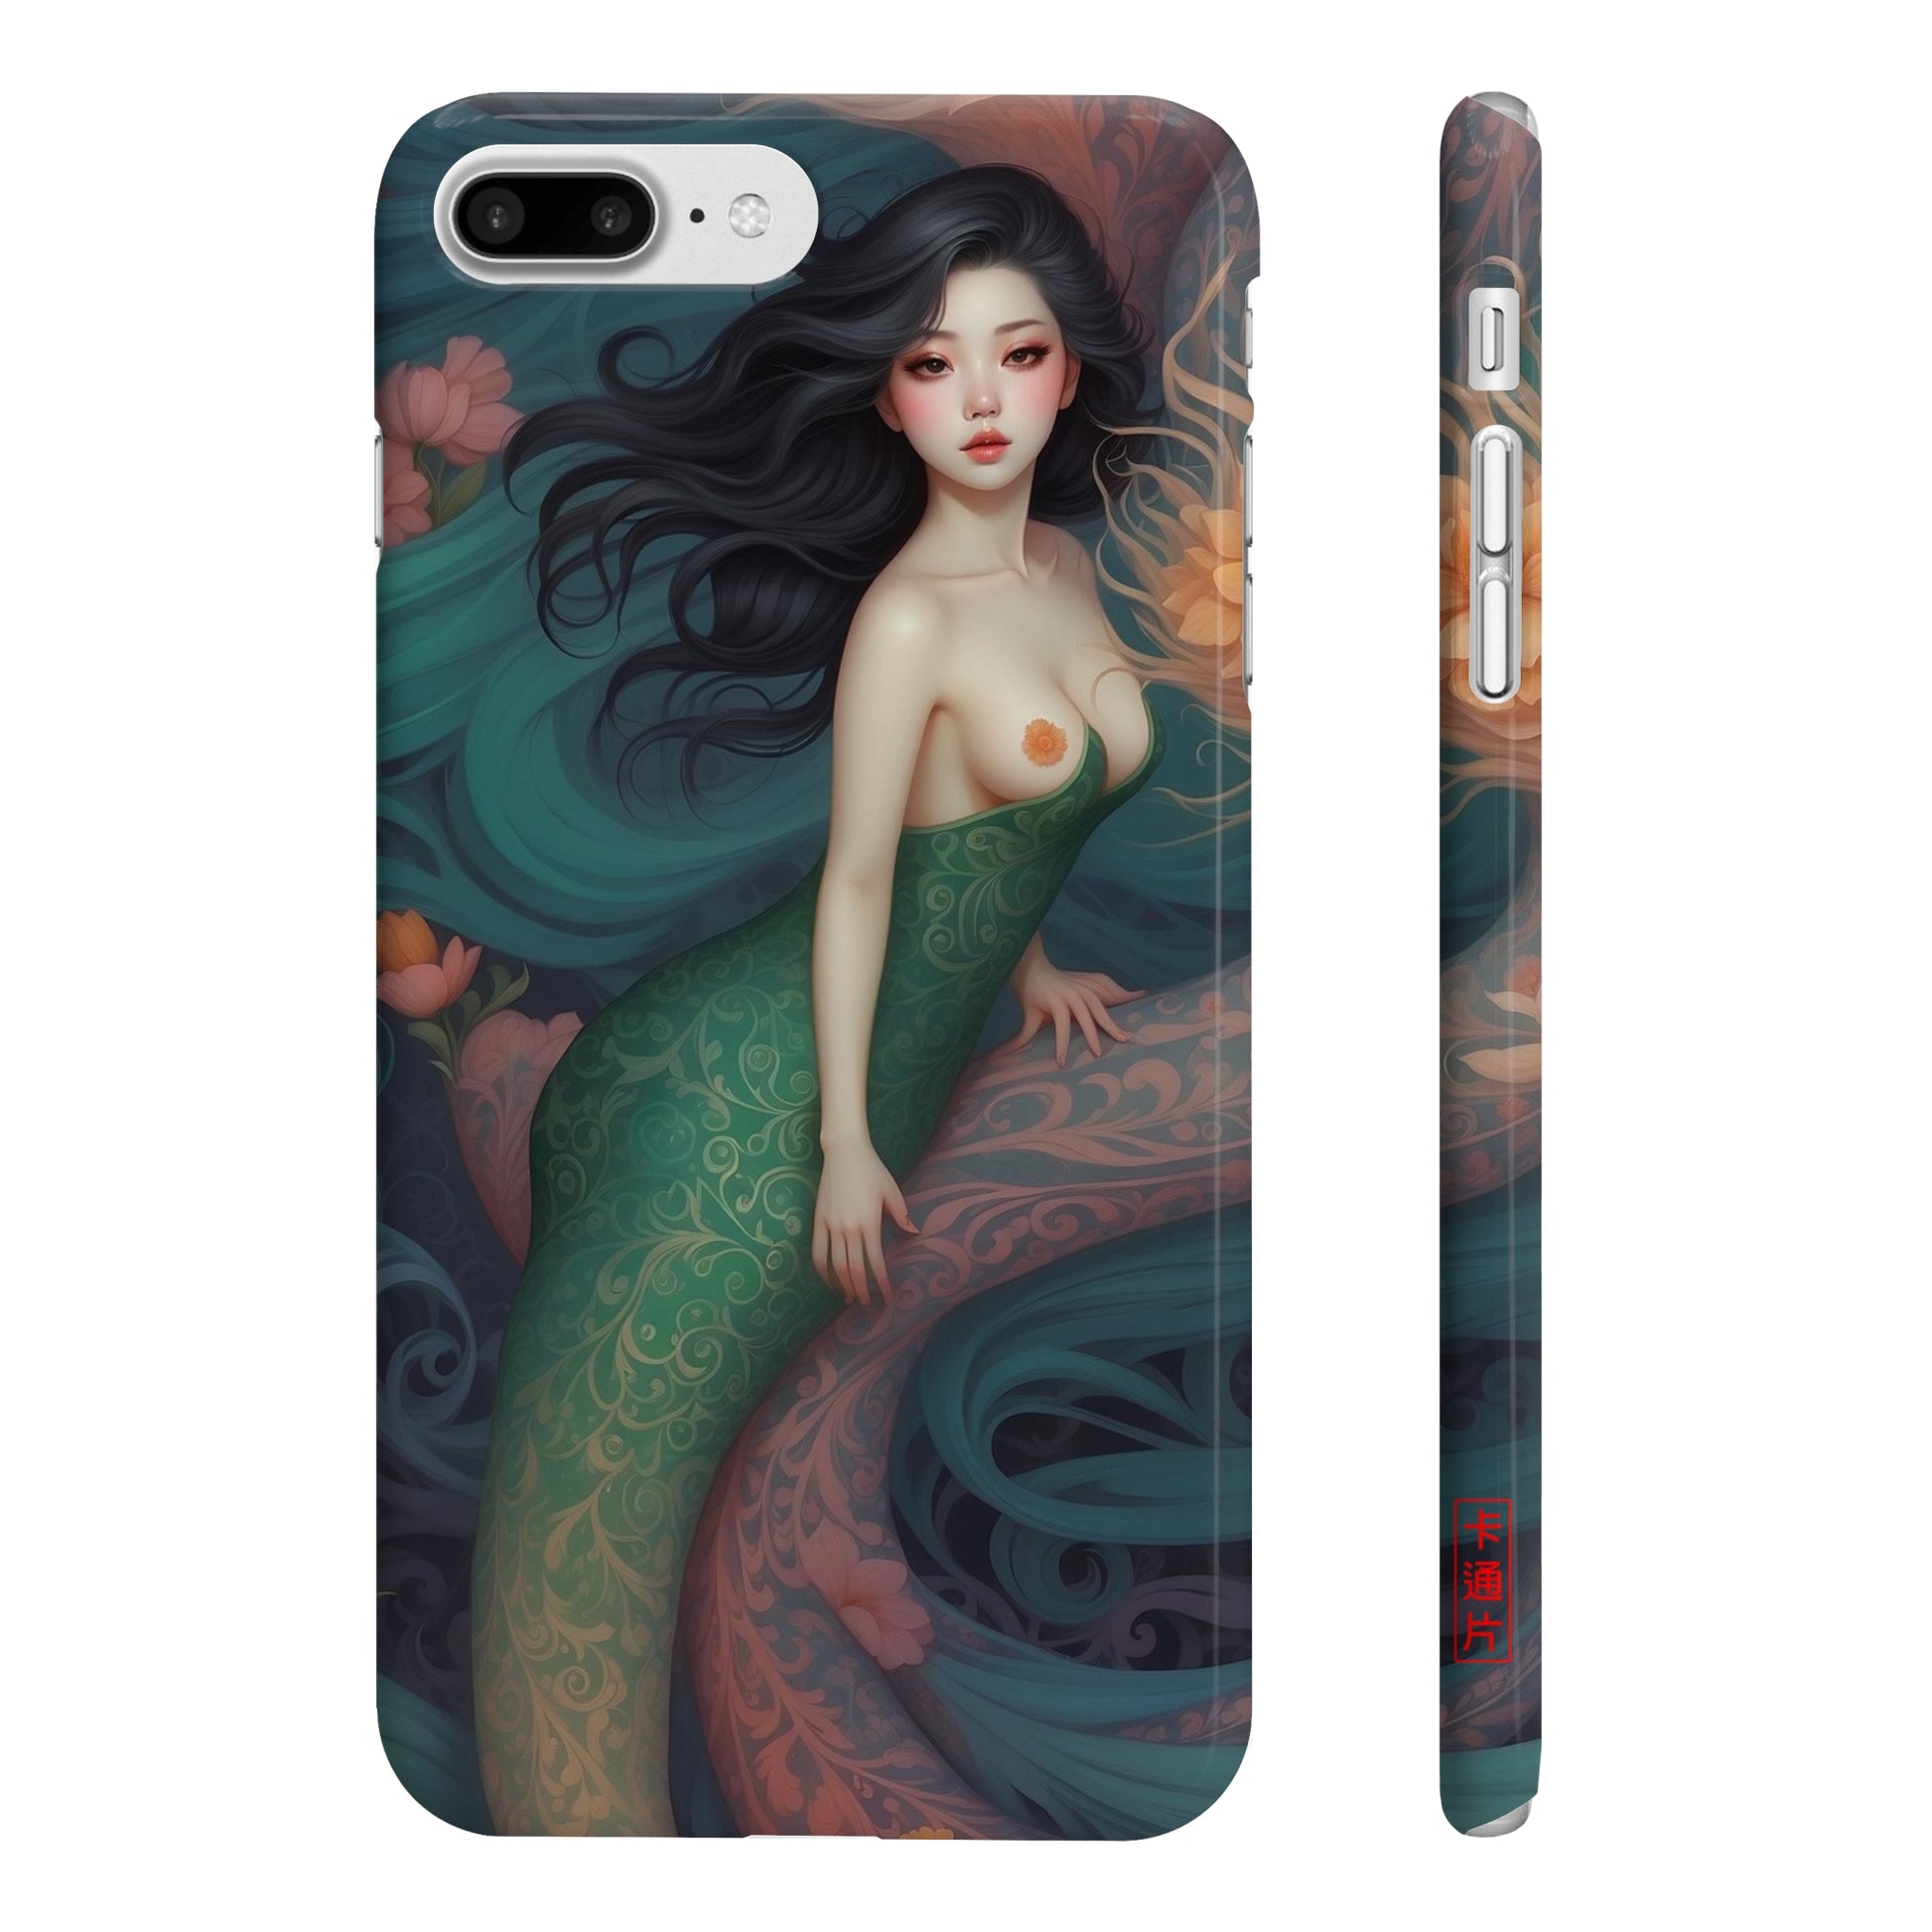 Kǎtōng Piàn - Mermaid Collection - 021 - Slim Phone Cases Printify